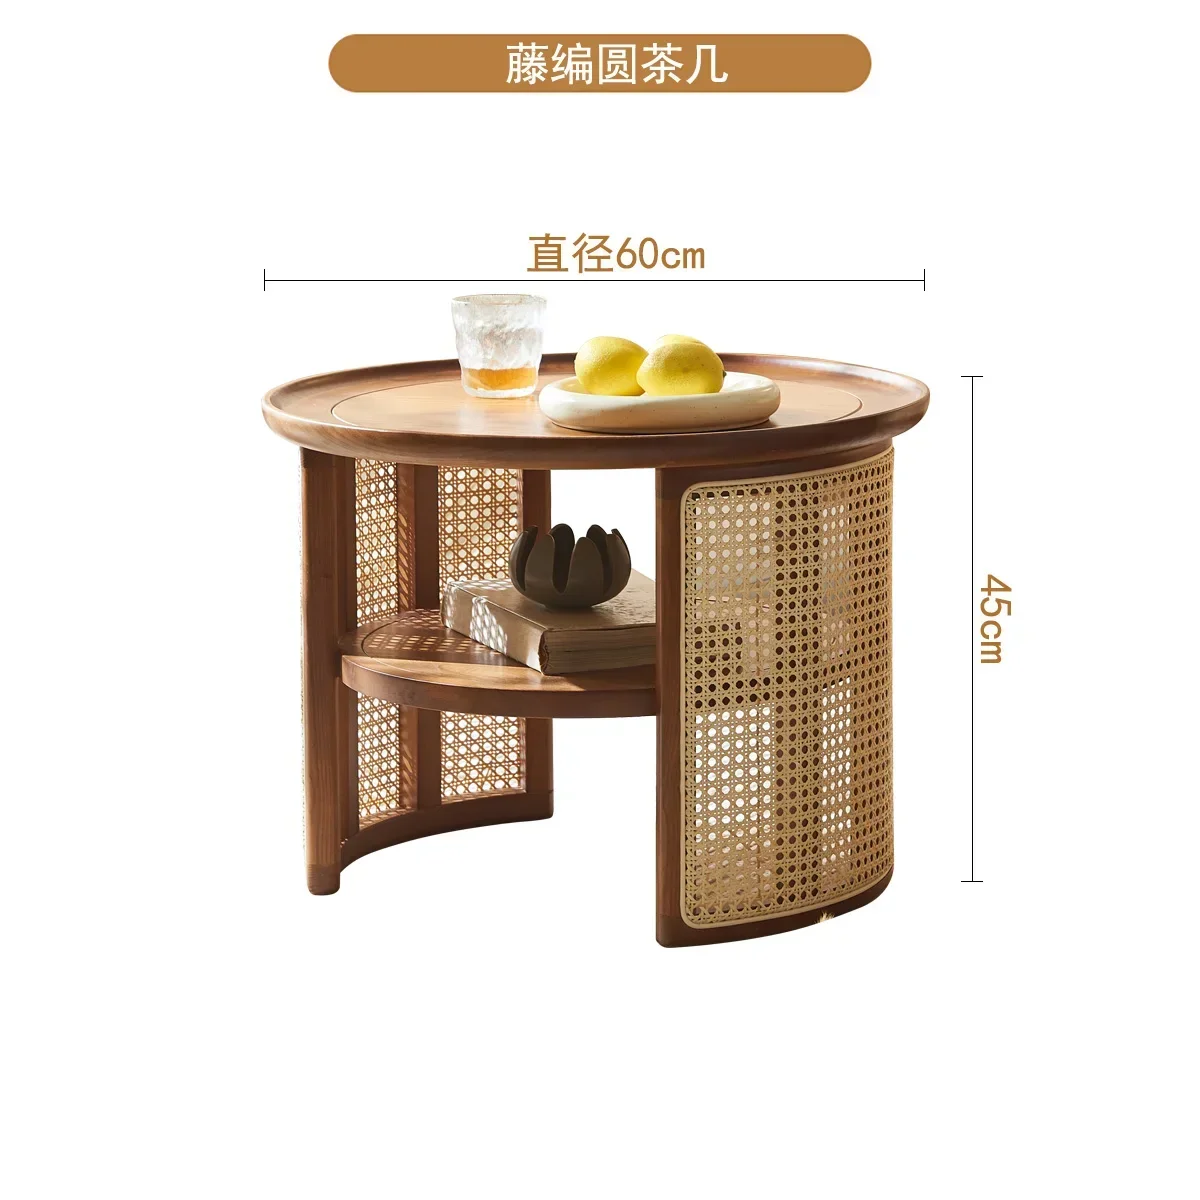 

Круглый Кофейный столик в стиле ретро из ротанга с закругленными краями из массива дерева японский маленький короткий столик.